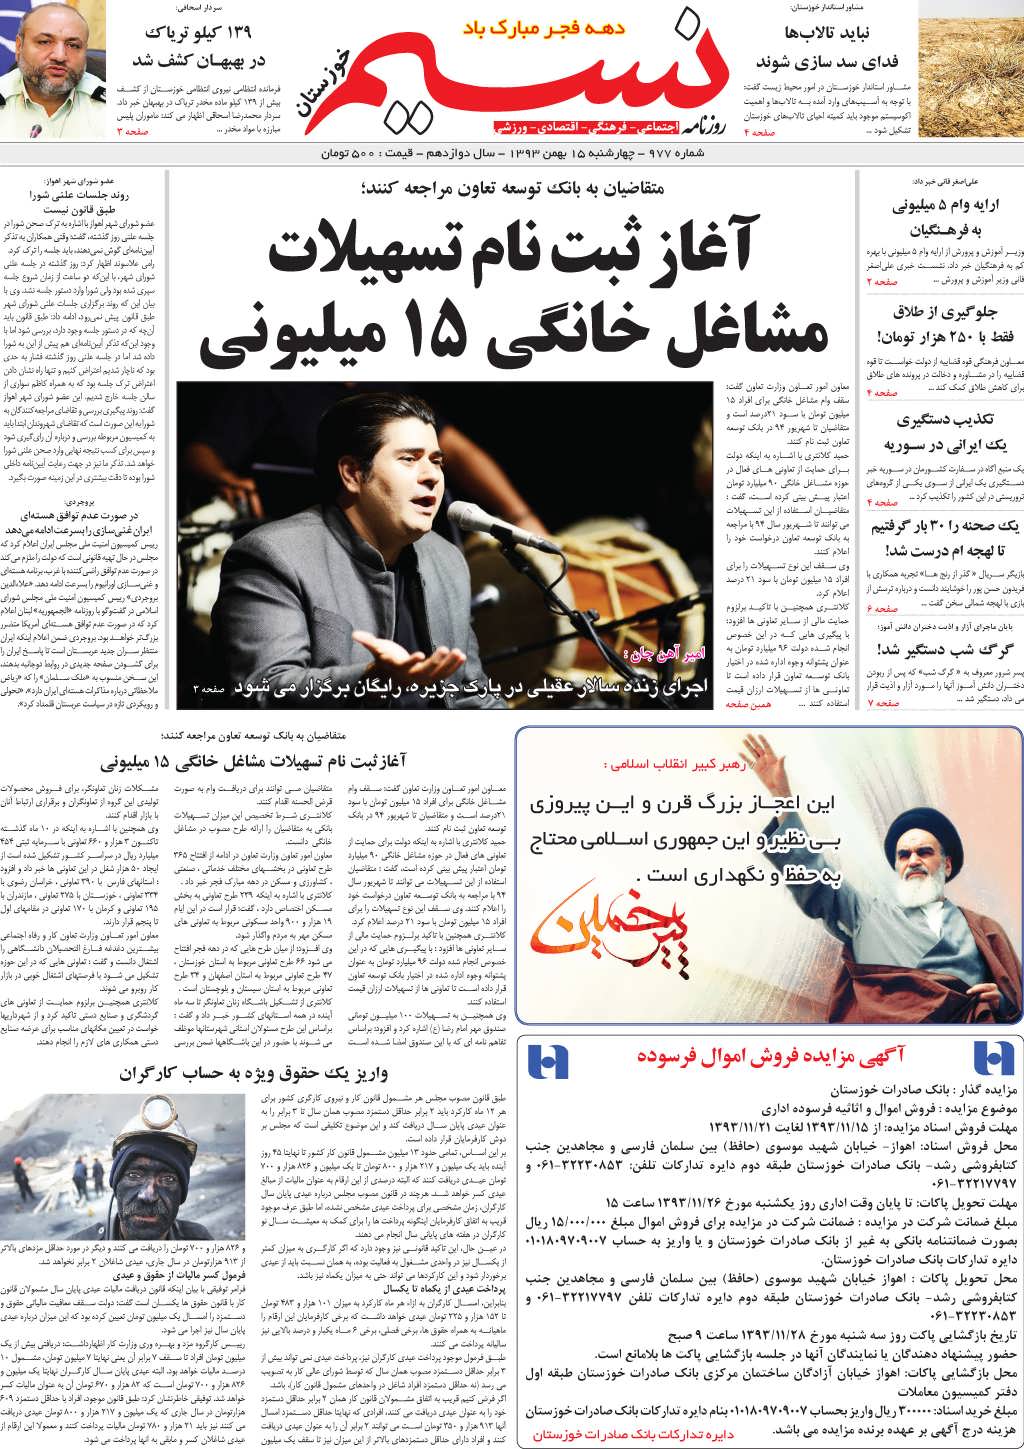 صفحه اصلی روزنامه نسیم شماره 977